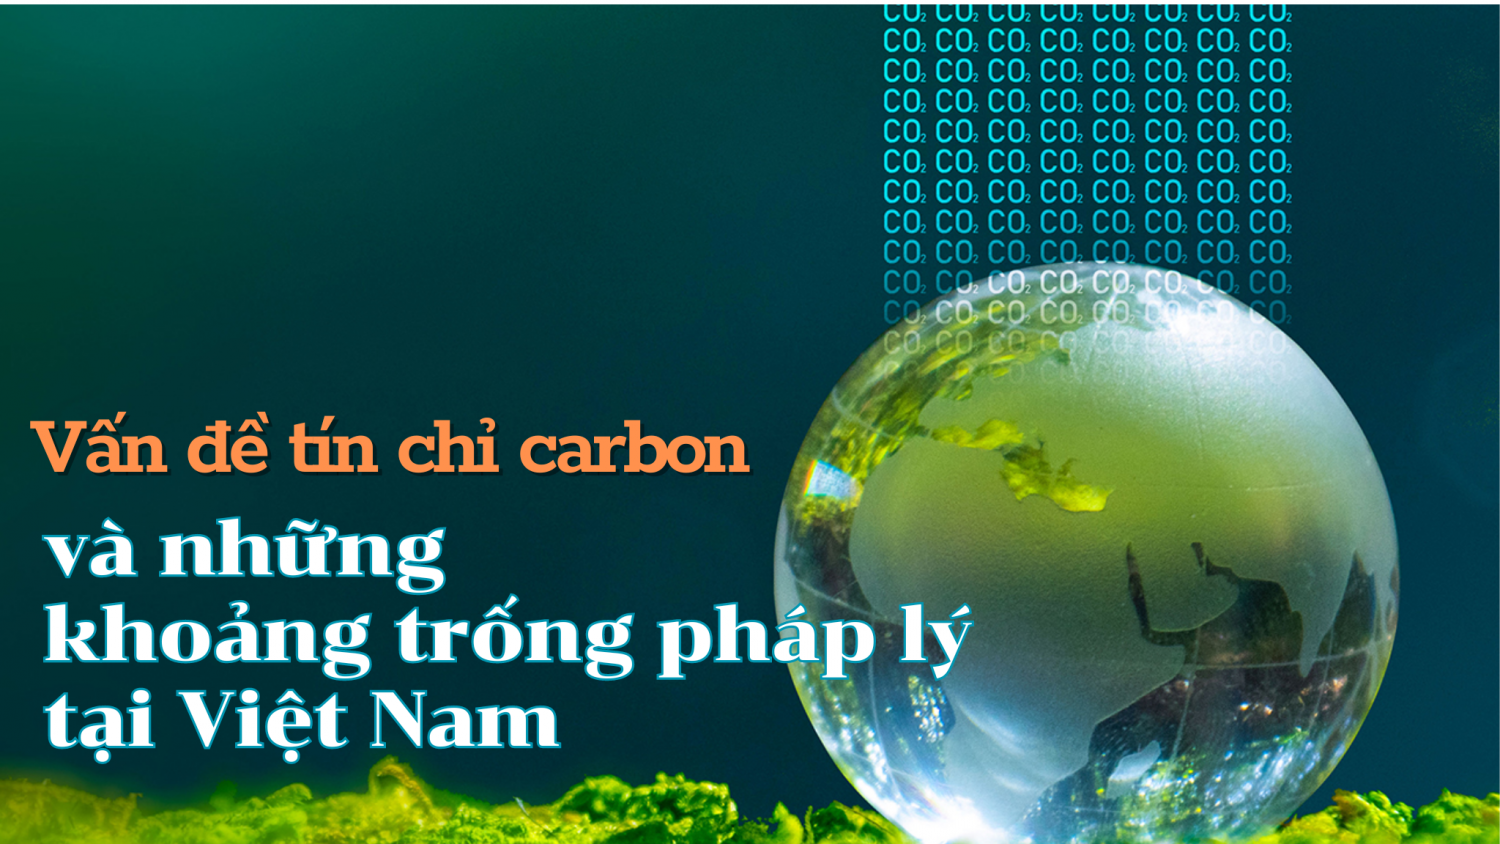 Vấn đề tín chỉ carbon và những khoảng trống pháp lý tại Việt Nam